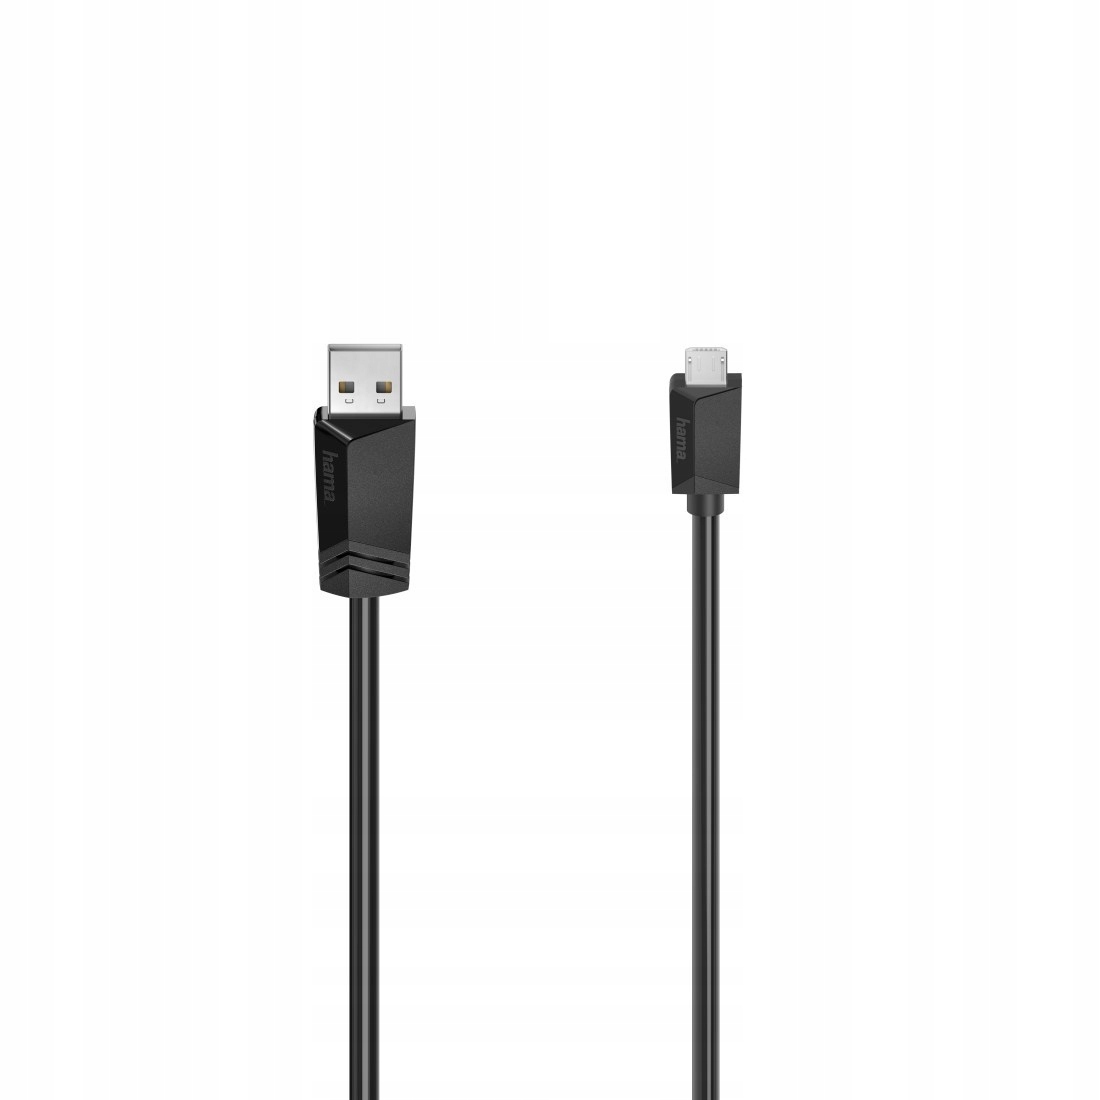 KÁBEL USB 2.0 USB A - MICRO USB B 0,75M za 4,57 € - Allegro